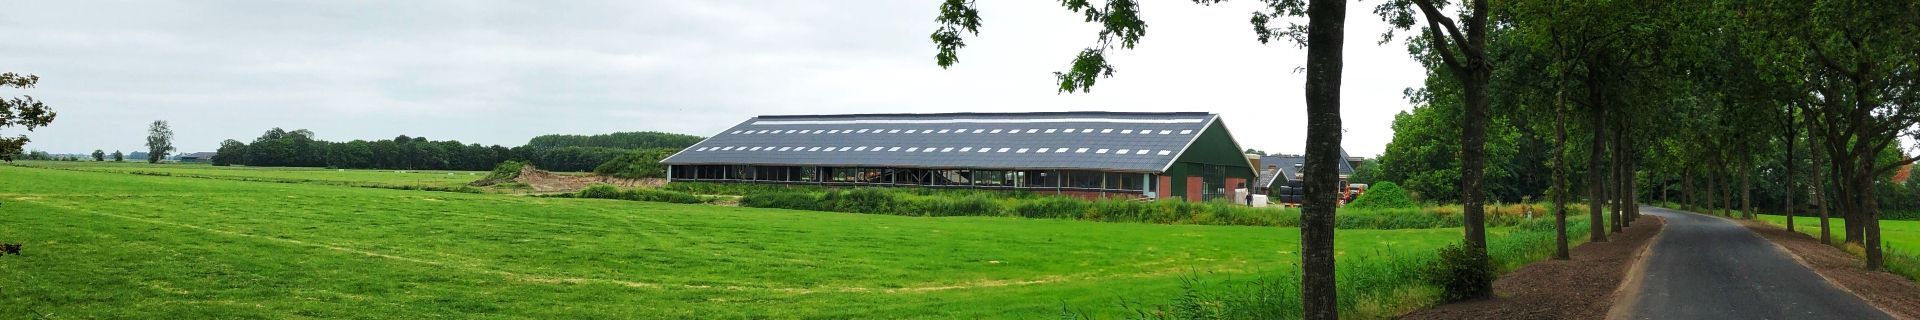 Biologische bedrijfsvoering van melkveehouder Douwe Maat medebepalend voor stalbouw- en inrichting.